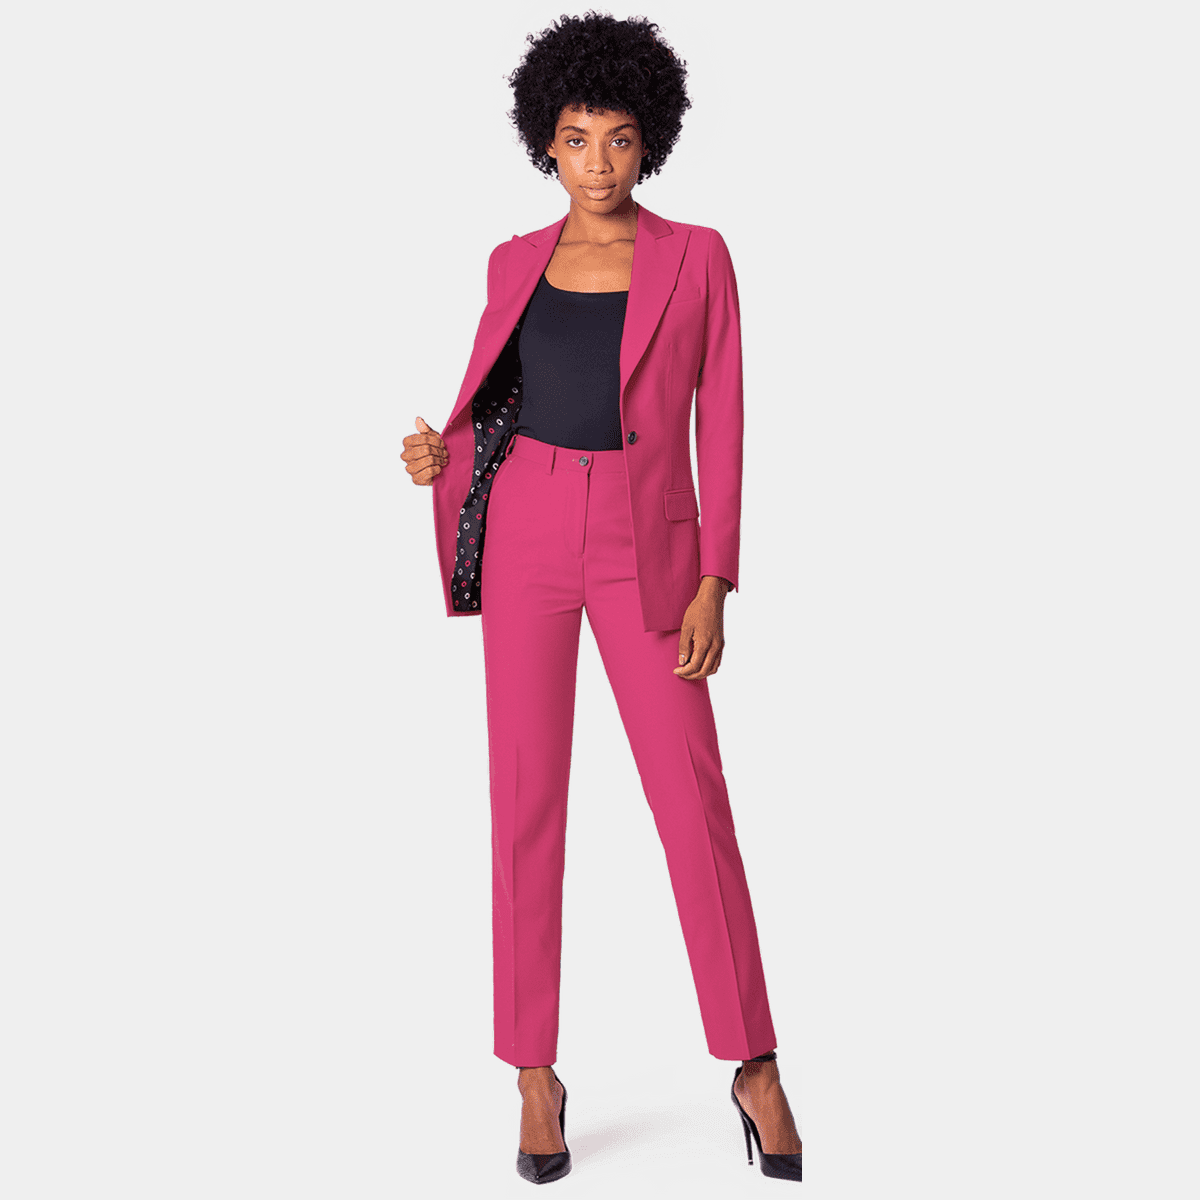 Women's Pink Pants Suit